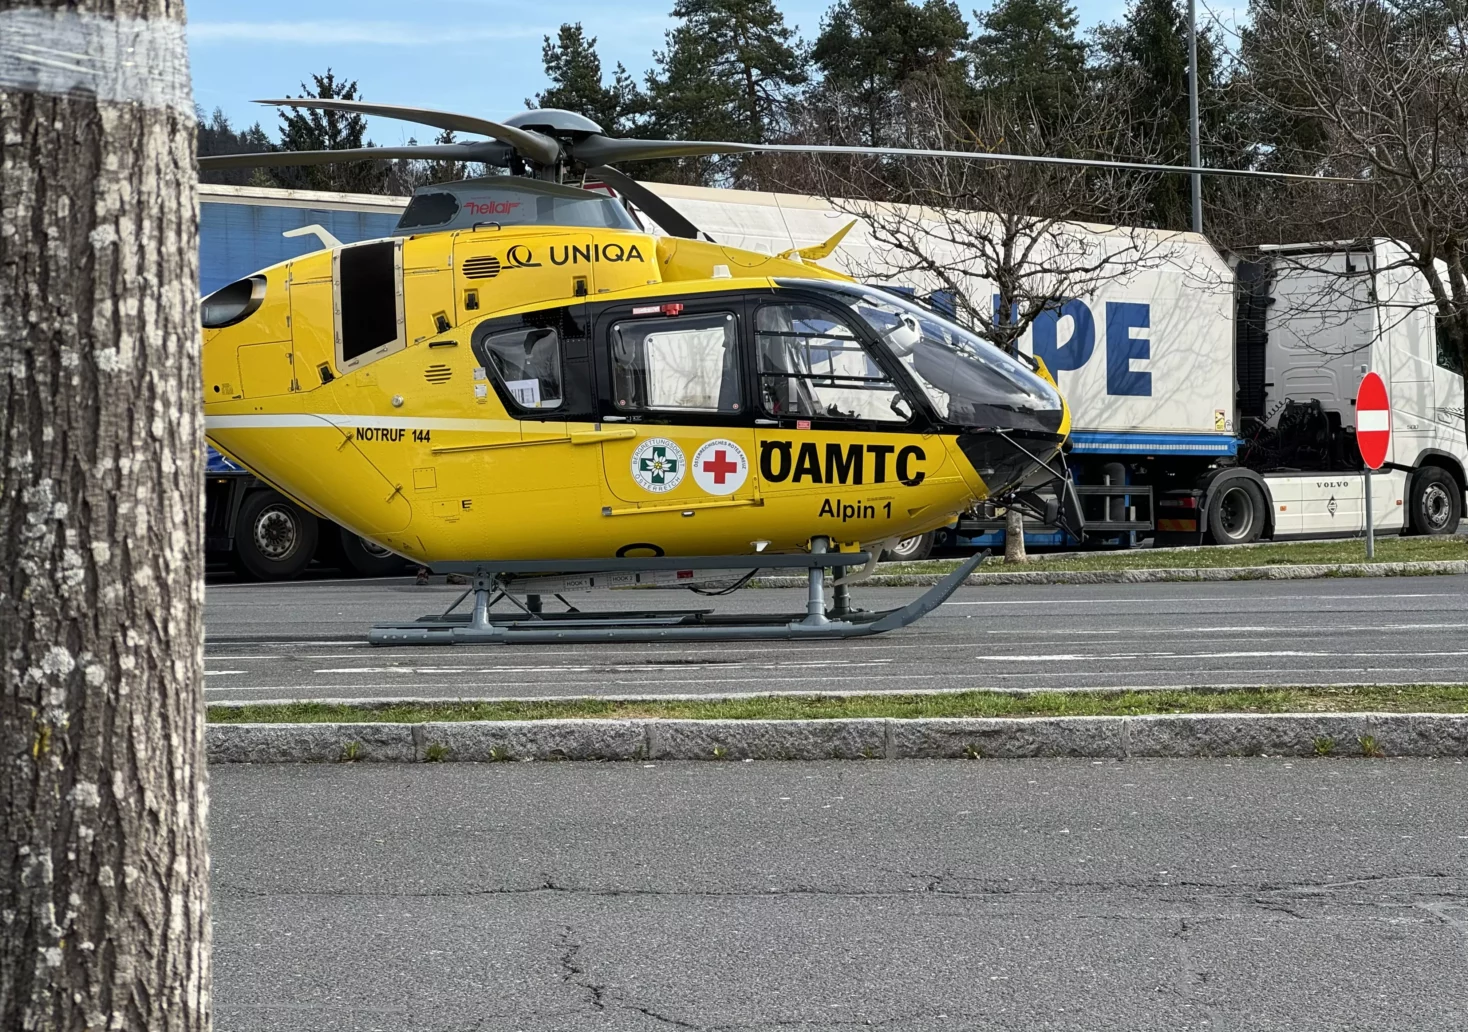 „Spektakulärer Einsatz“: Hubschrauber landet bei A2-Raststätte